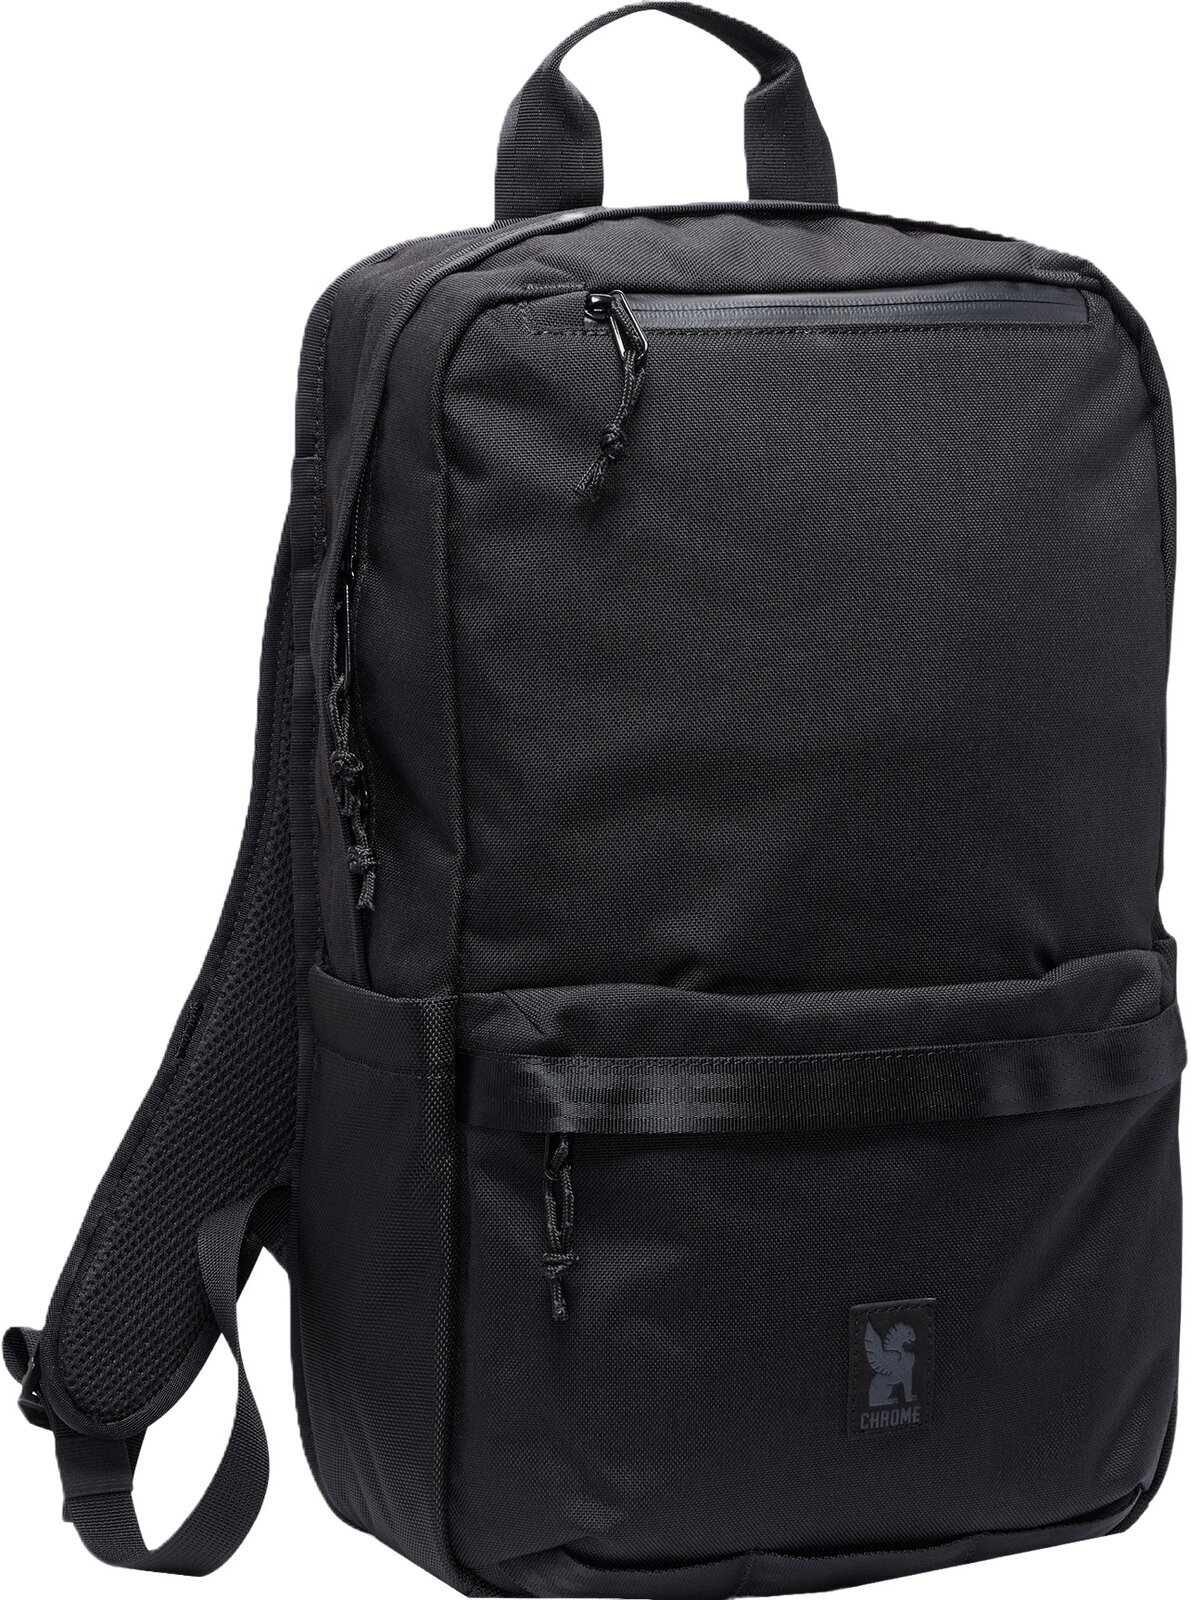 Lifestyle zaino / Borsa Chrome Hondo Backpack Black 18 L Zaino